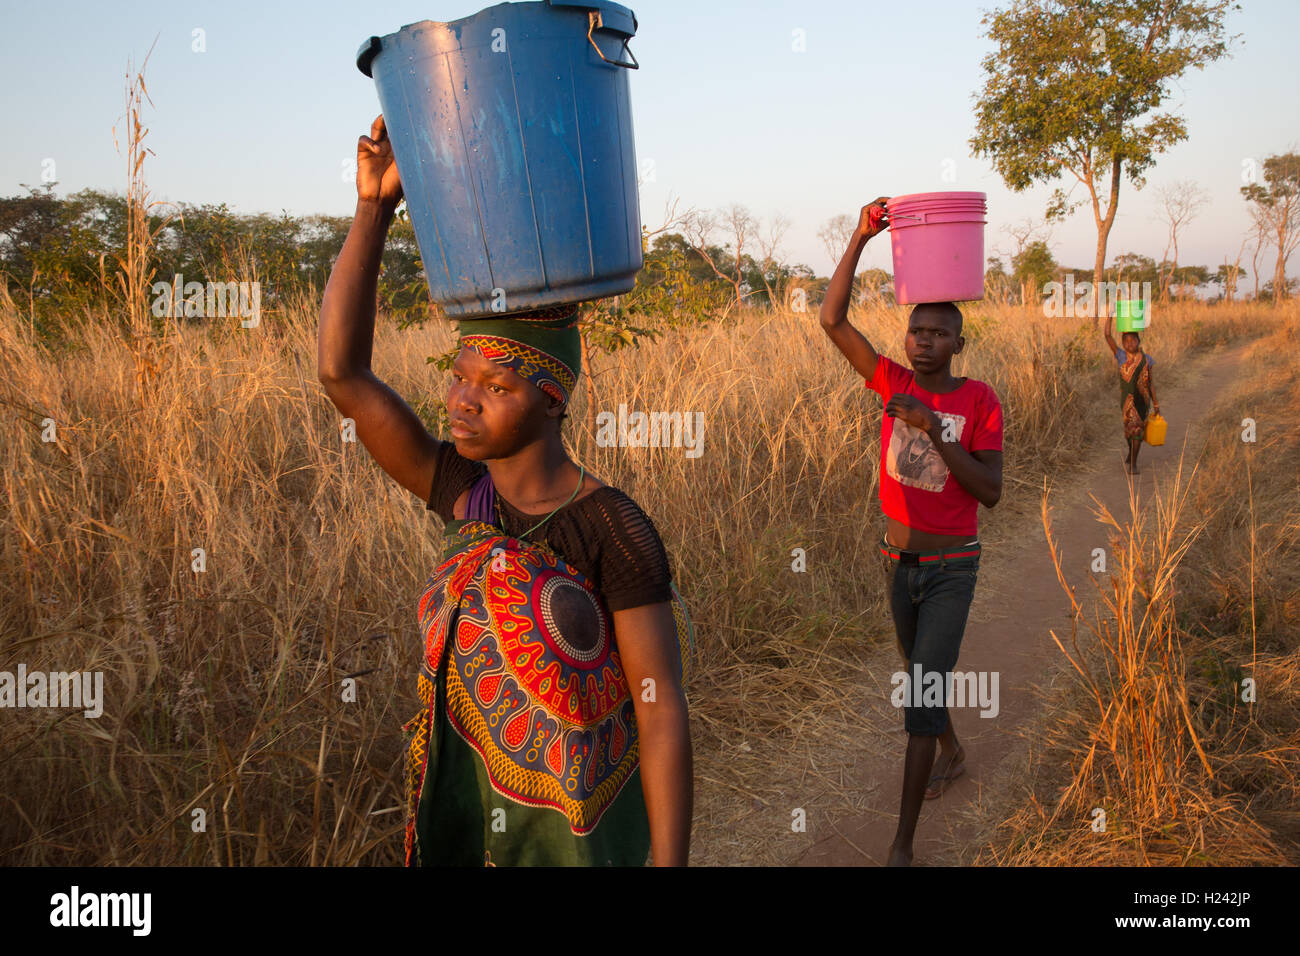 Distretto Lalaua, Nampula Provincia, Mozambico, Agosto 2015: Laurinda Diego i bambini prendere l'acqua da un pozzo vicino. Foto di Mike Goldwater Foto Stock